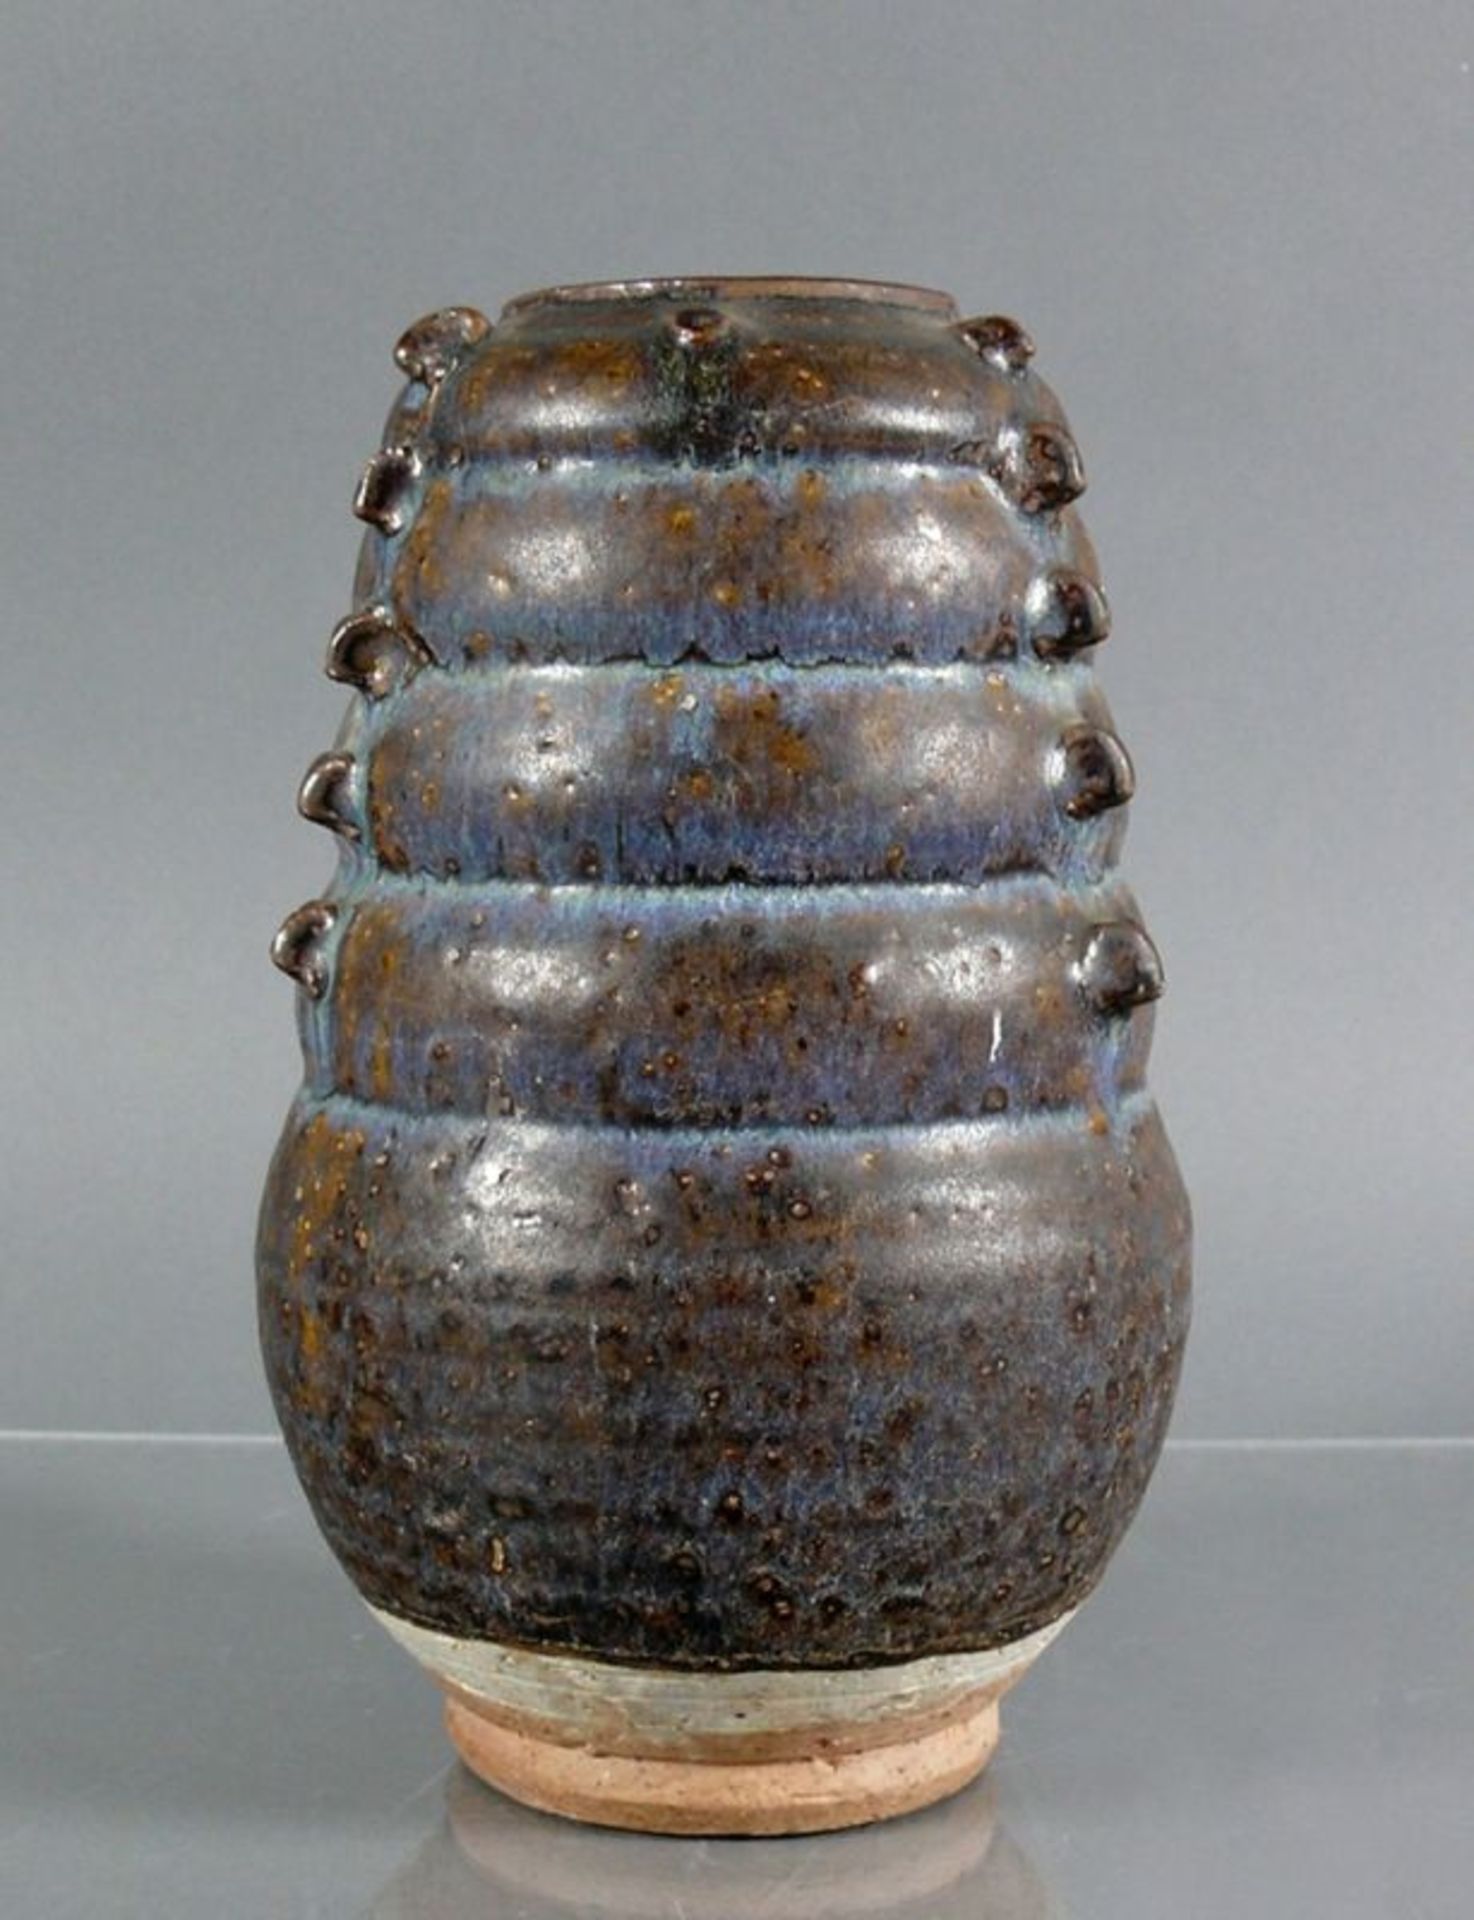 Vase (China) runder, sich nach oben verjüngender Korpus mit mehrfach leicht gewulsteter Wandung